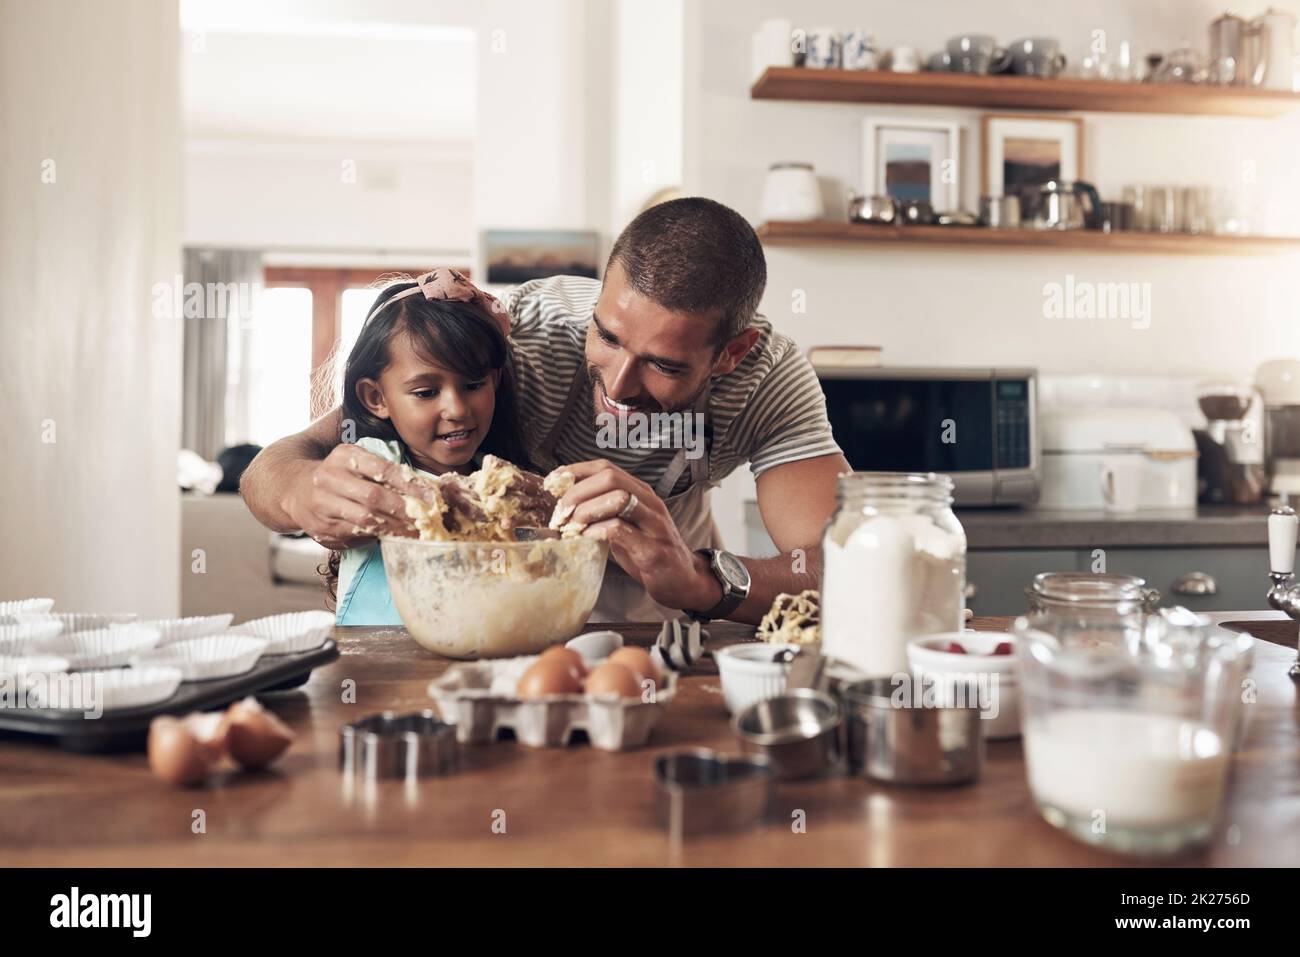 L'amour de la famille est désordonné.Photo d'un père enseignant à sa fille comment cuire dans la cuisine à la maison. Banque D'Images